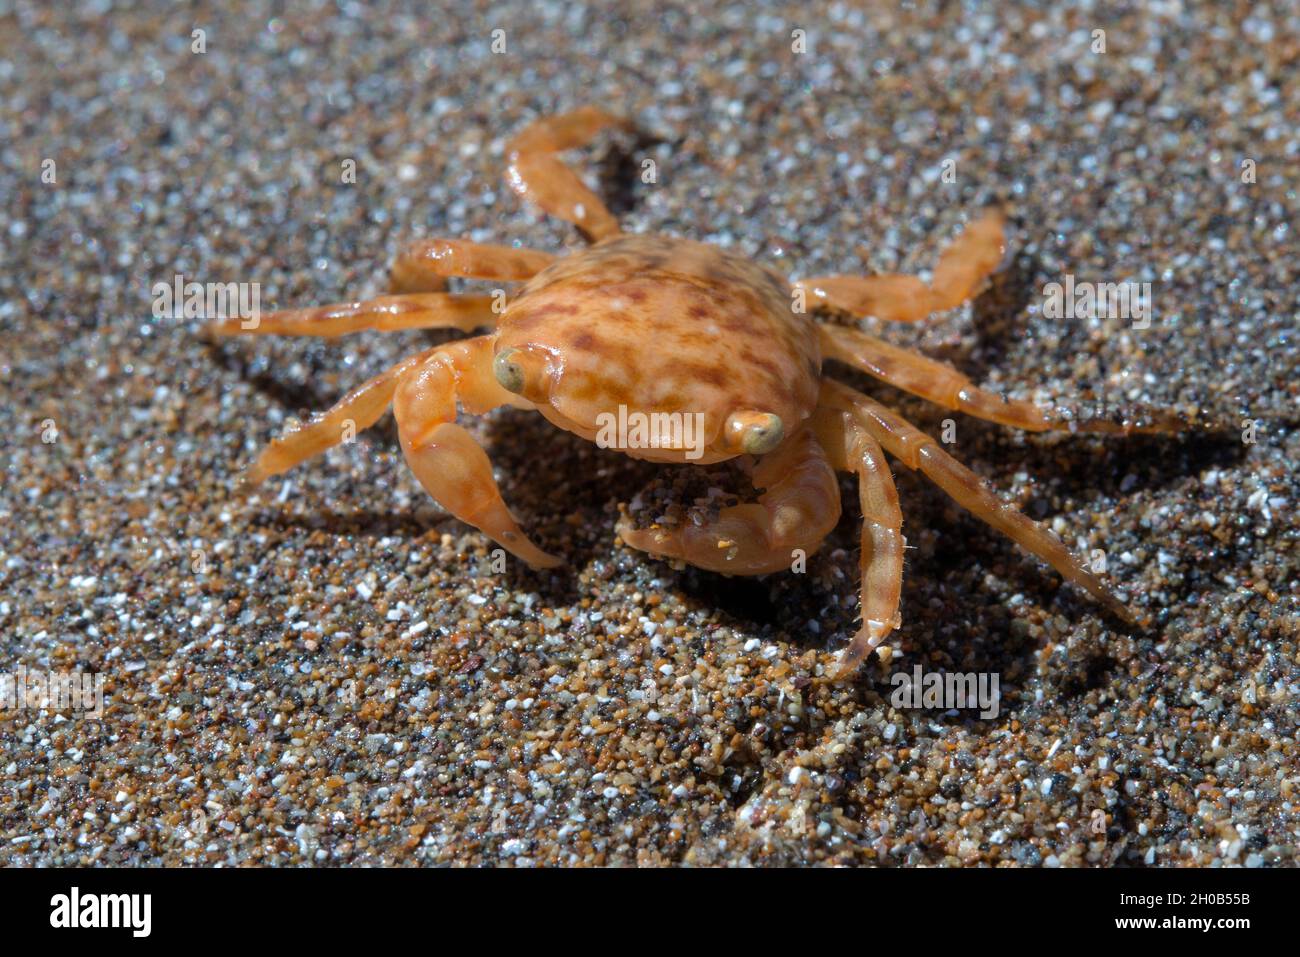 Crab (Planes minutus). Es handelt sich um eine pelagische Art, die im offenen Meer gefunden wird, obwohl sie manchmal, je nach Gezeiten, am Küstenbeac gestrandet erscheinen kann Stockfoto